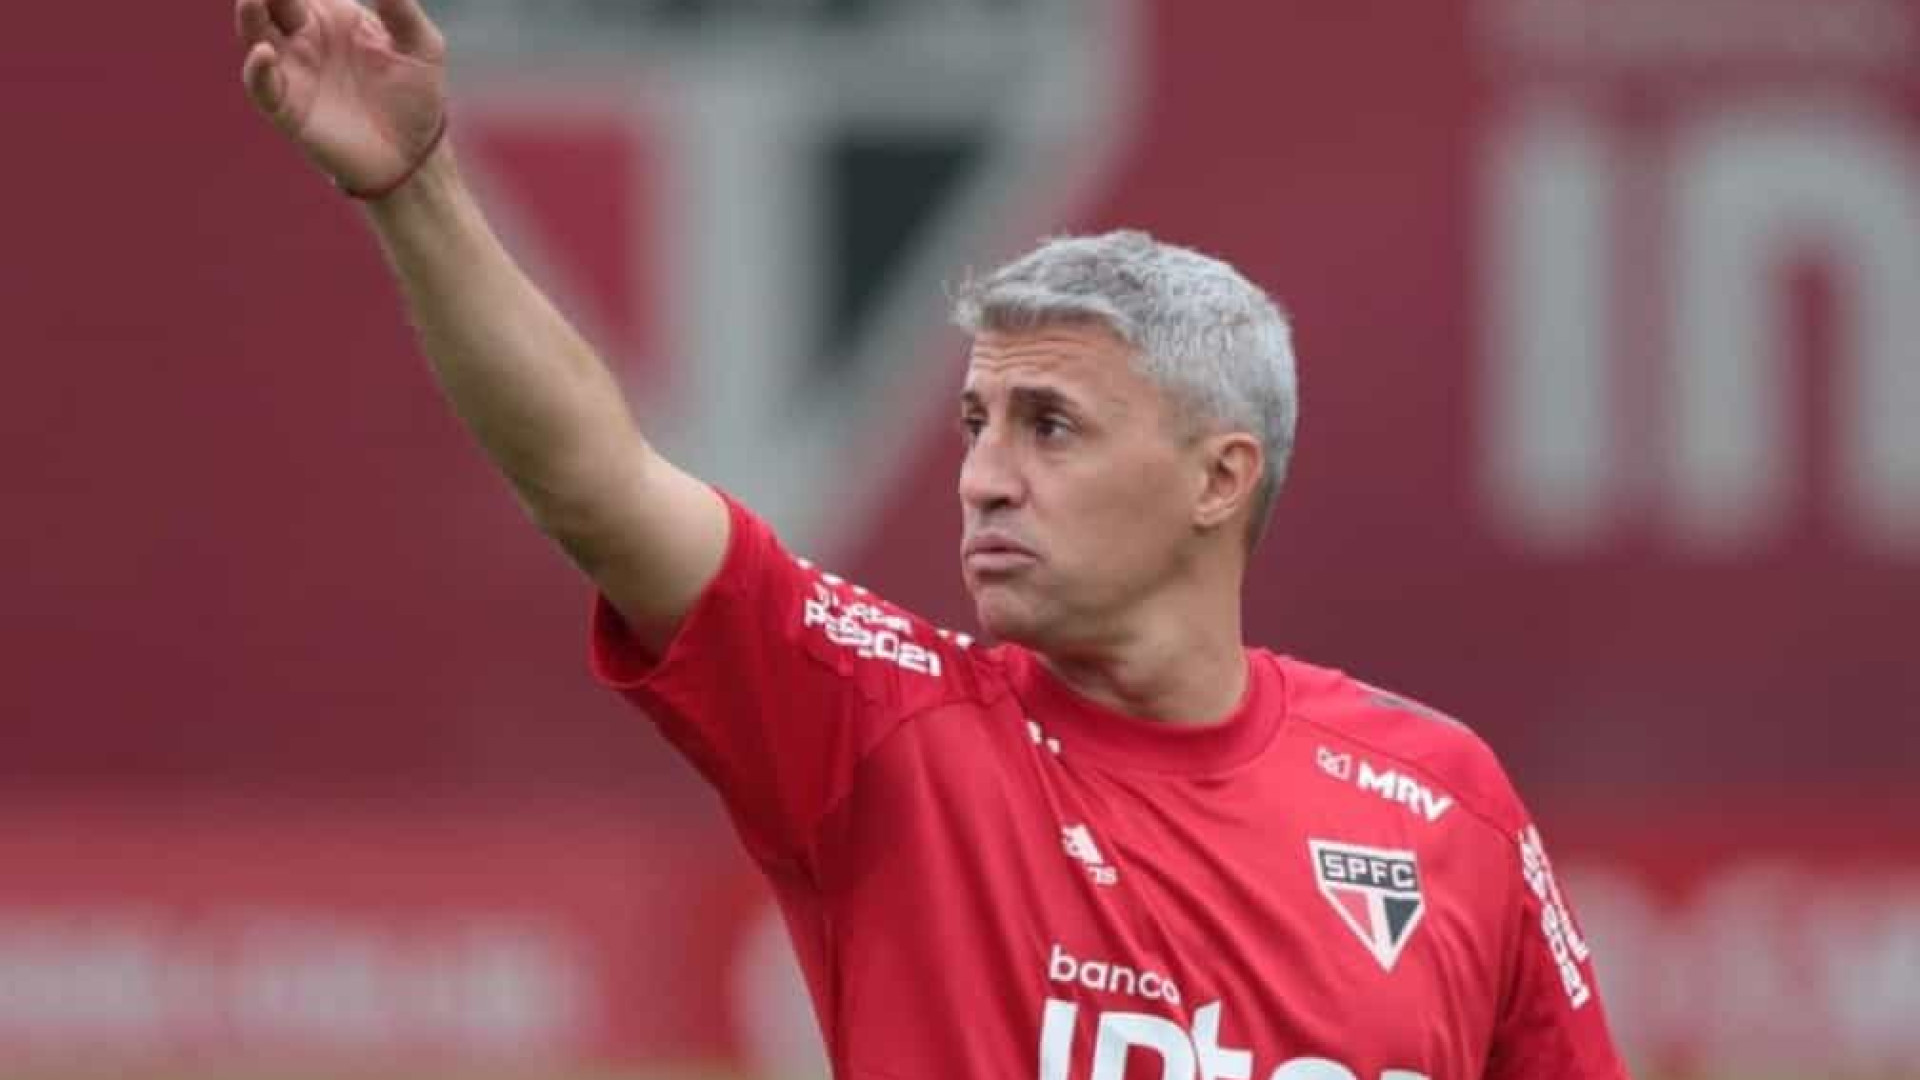 Crespo exalta São Paulo após 'teste' na defesa: 'O time foi perfeito'